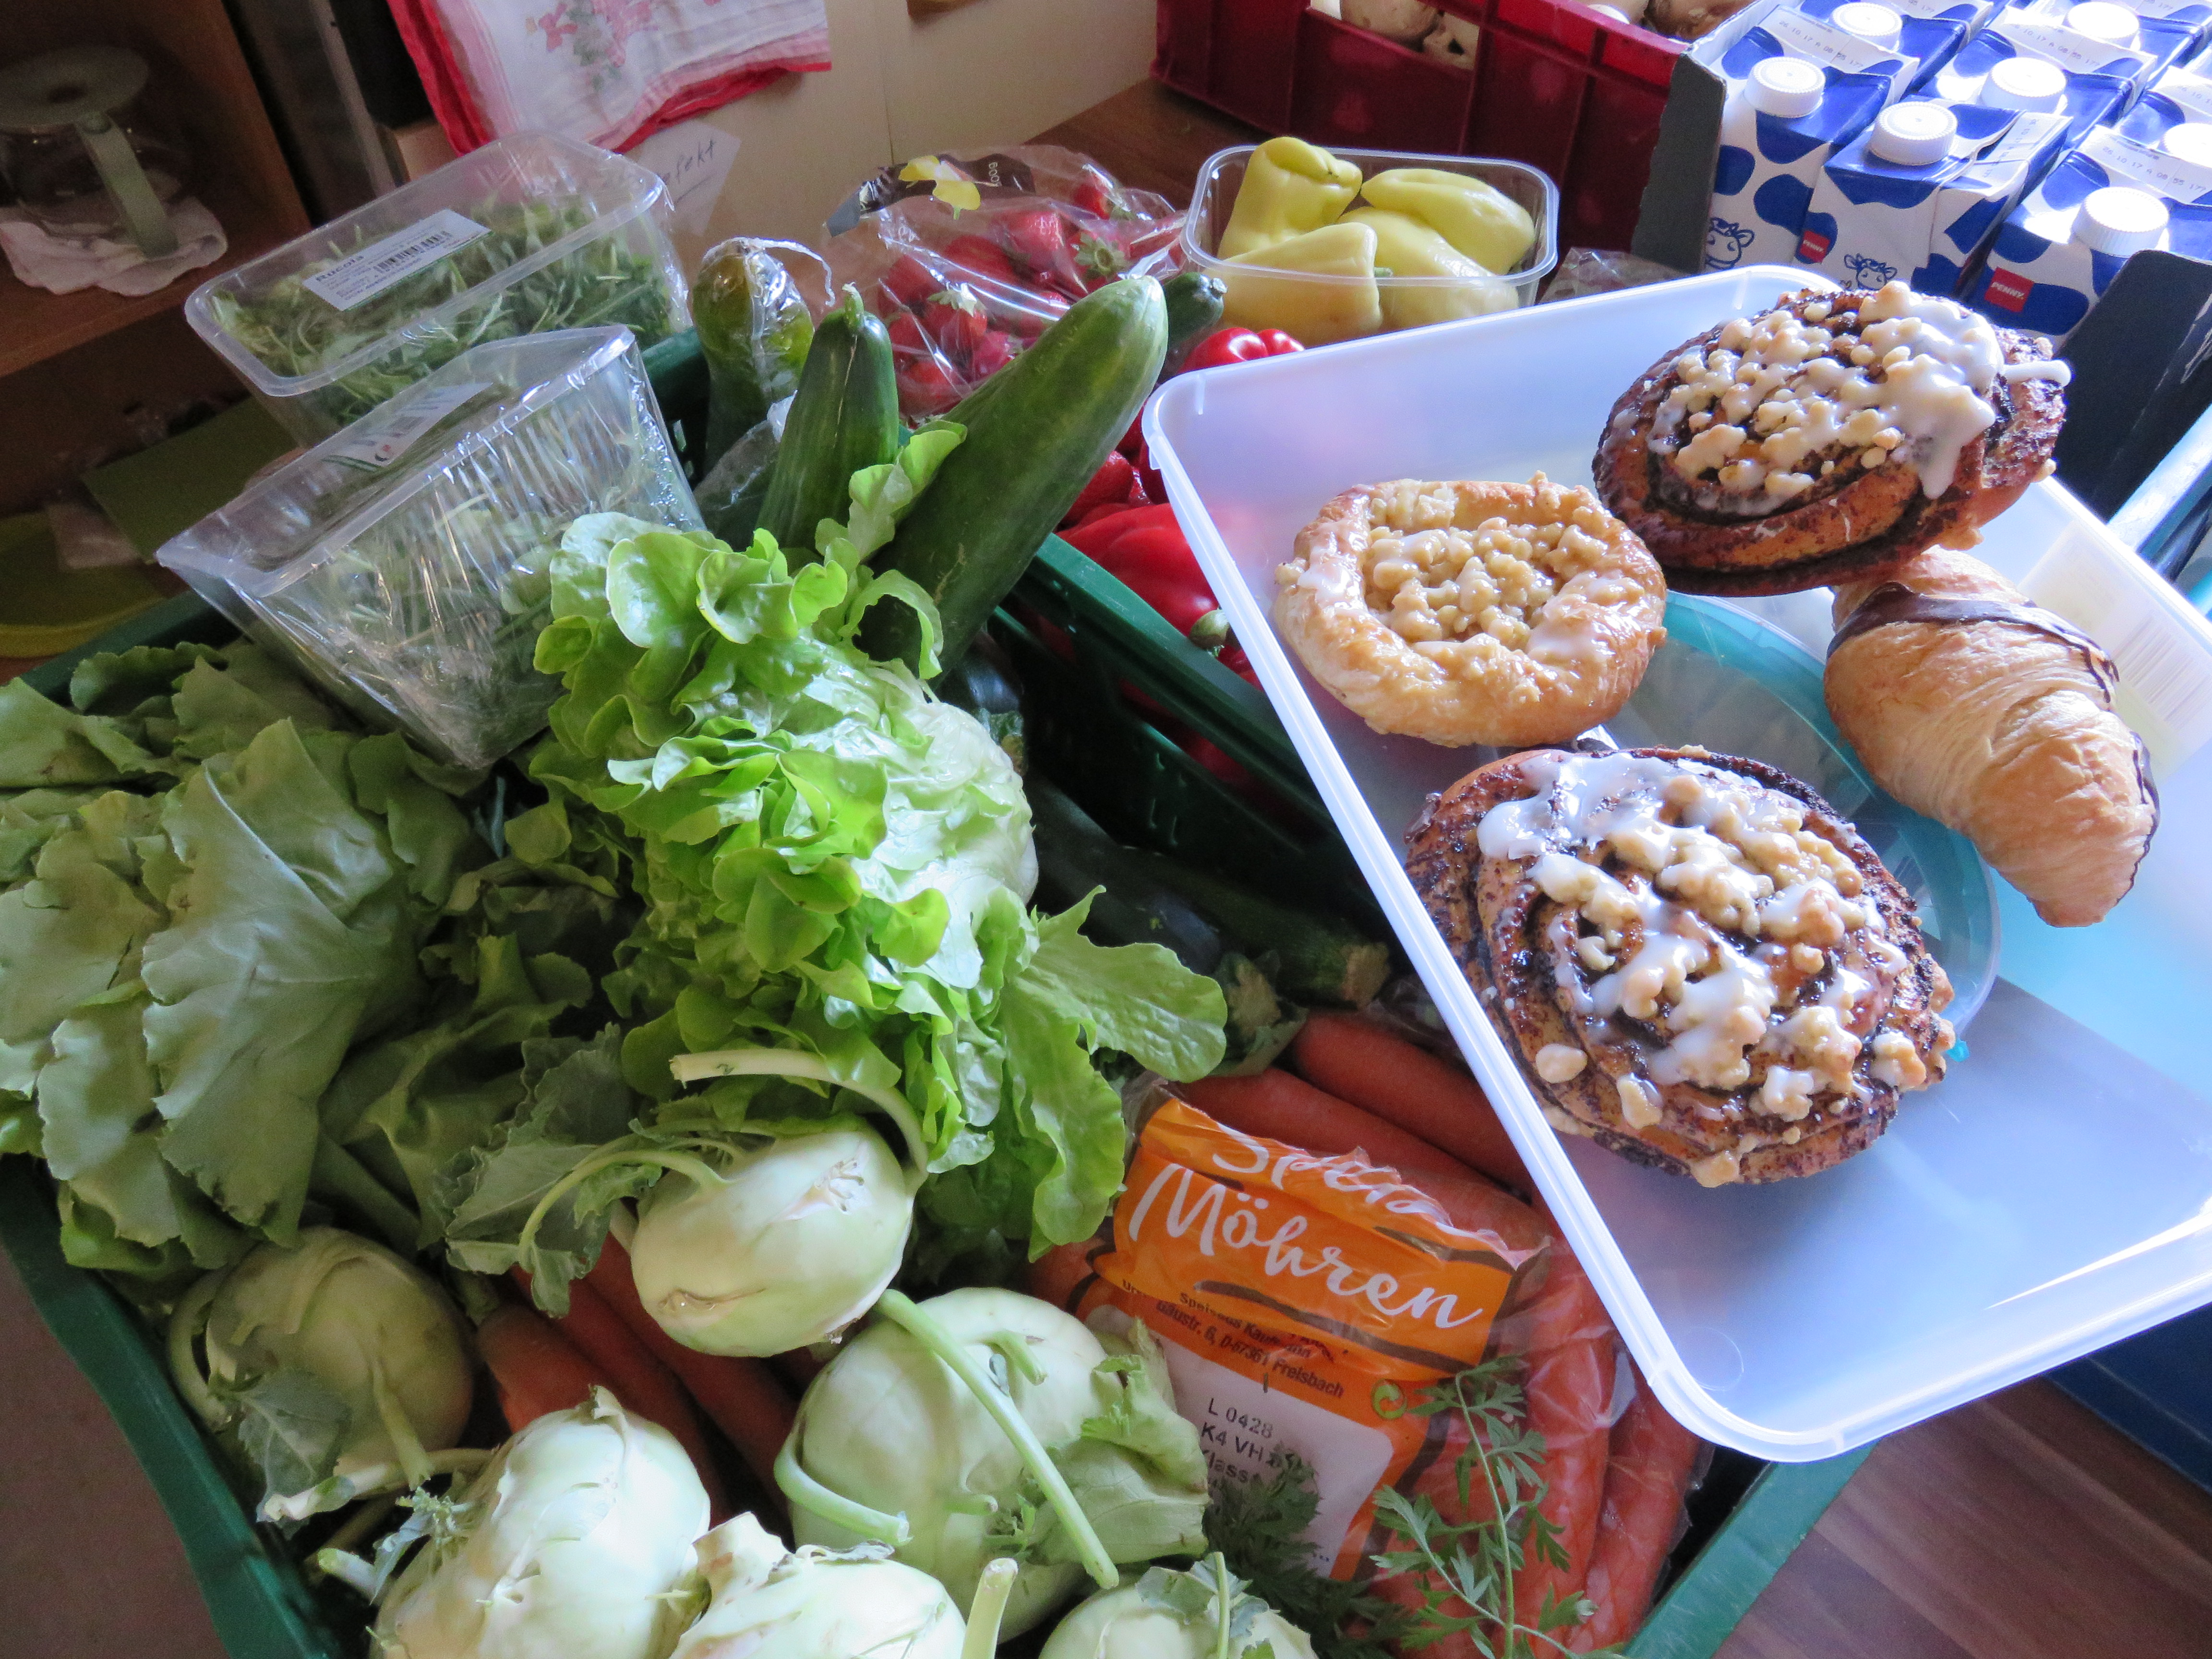 Lebensmittelspenden von Supermärkten und Bäckereien